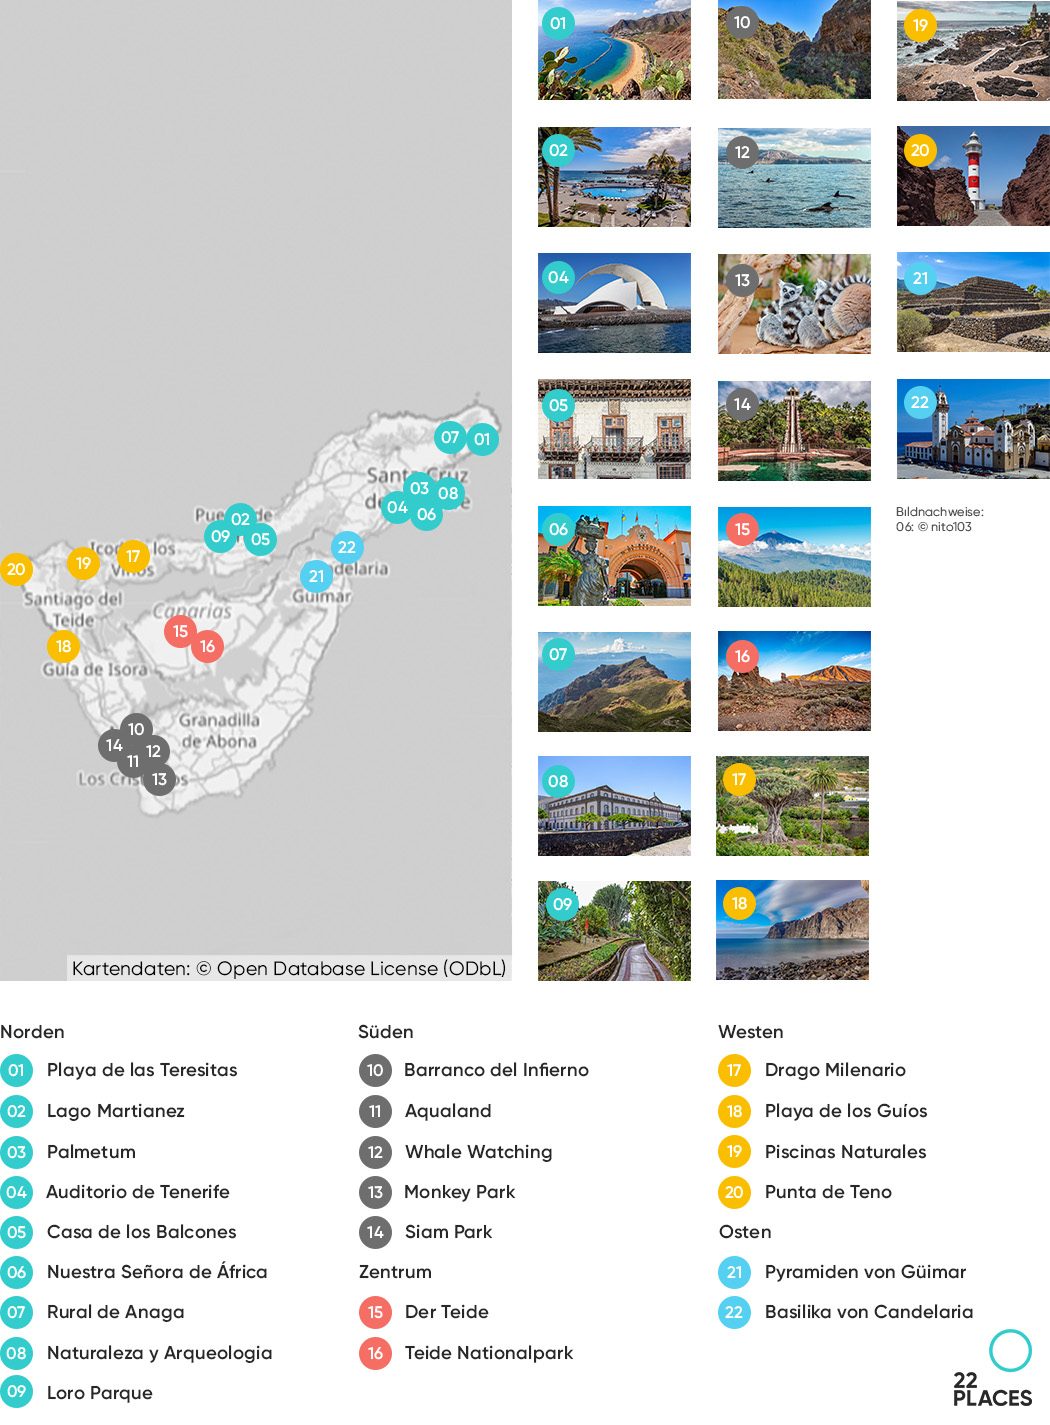 Karte der 22 Sehenswürdigkeiten auf Teneriffa